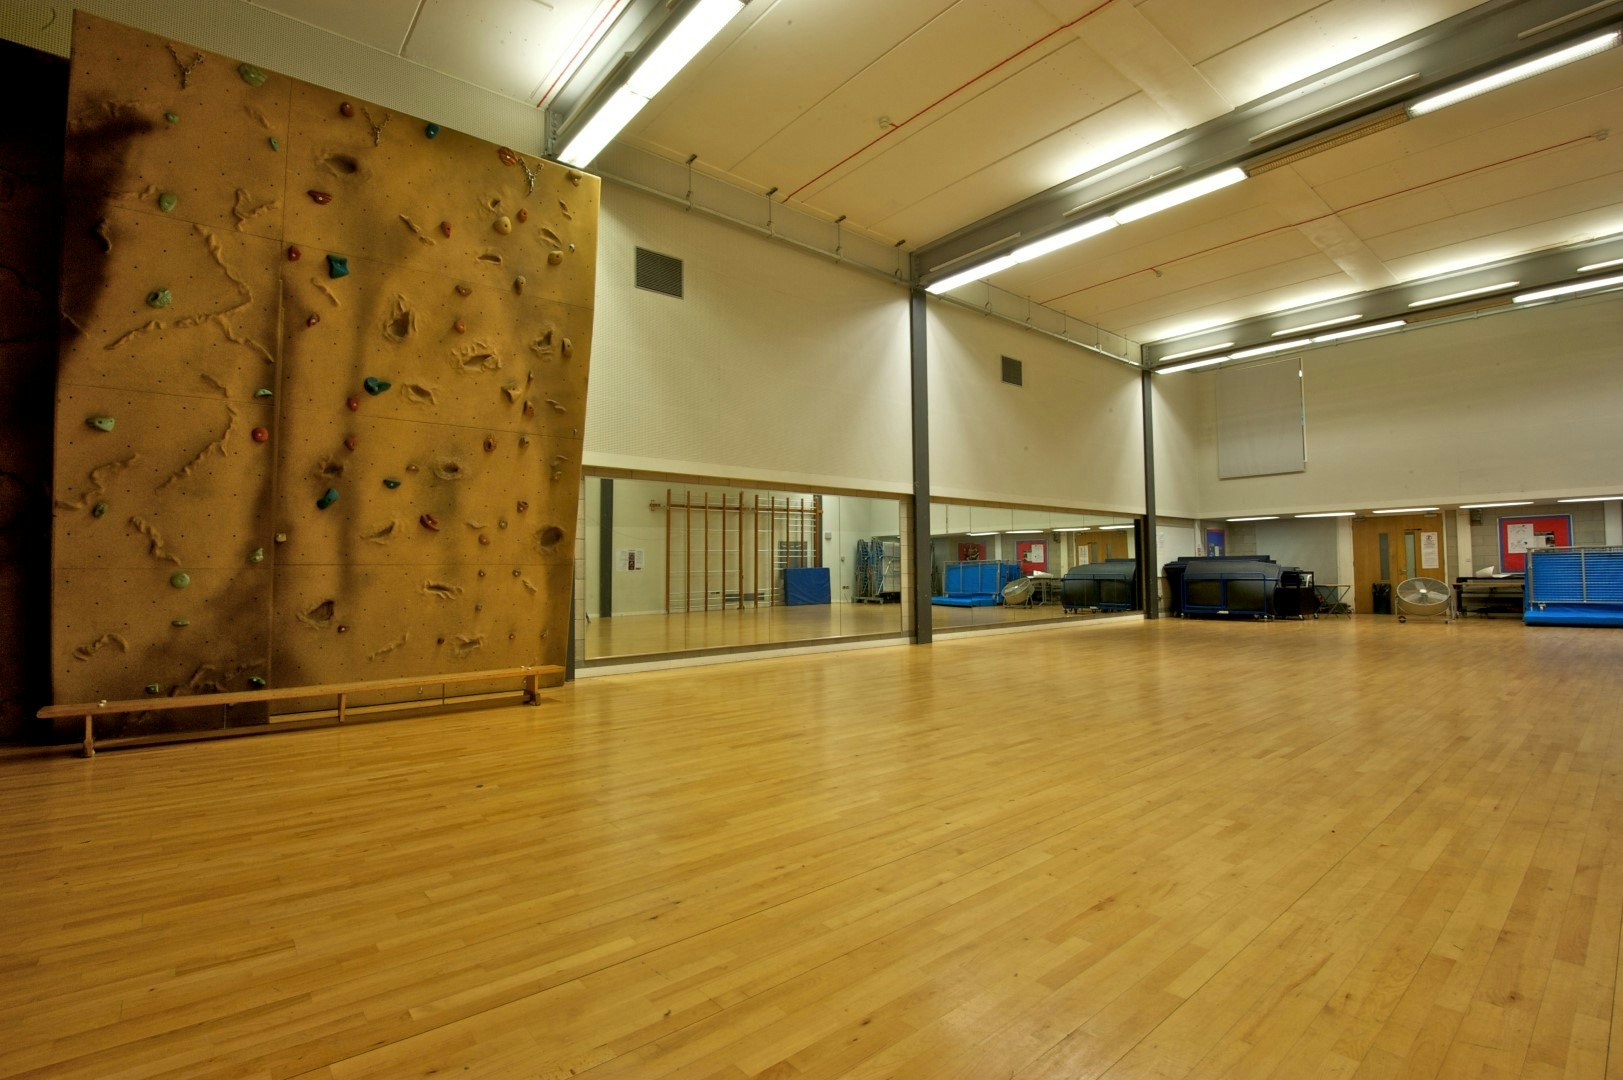 Pilates Studios Venues in London - Haverstock School